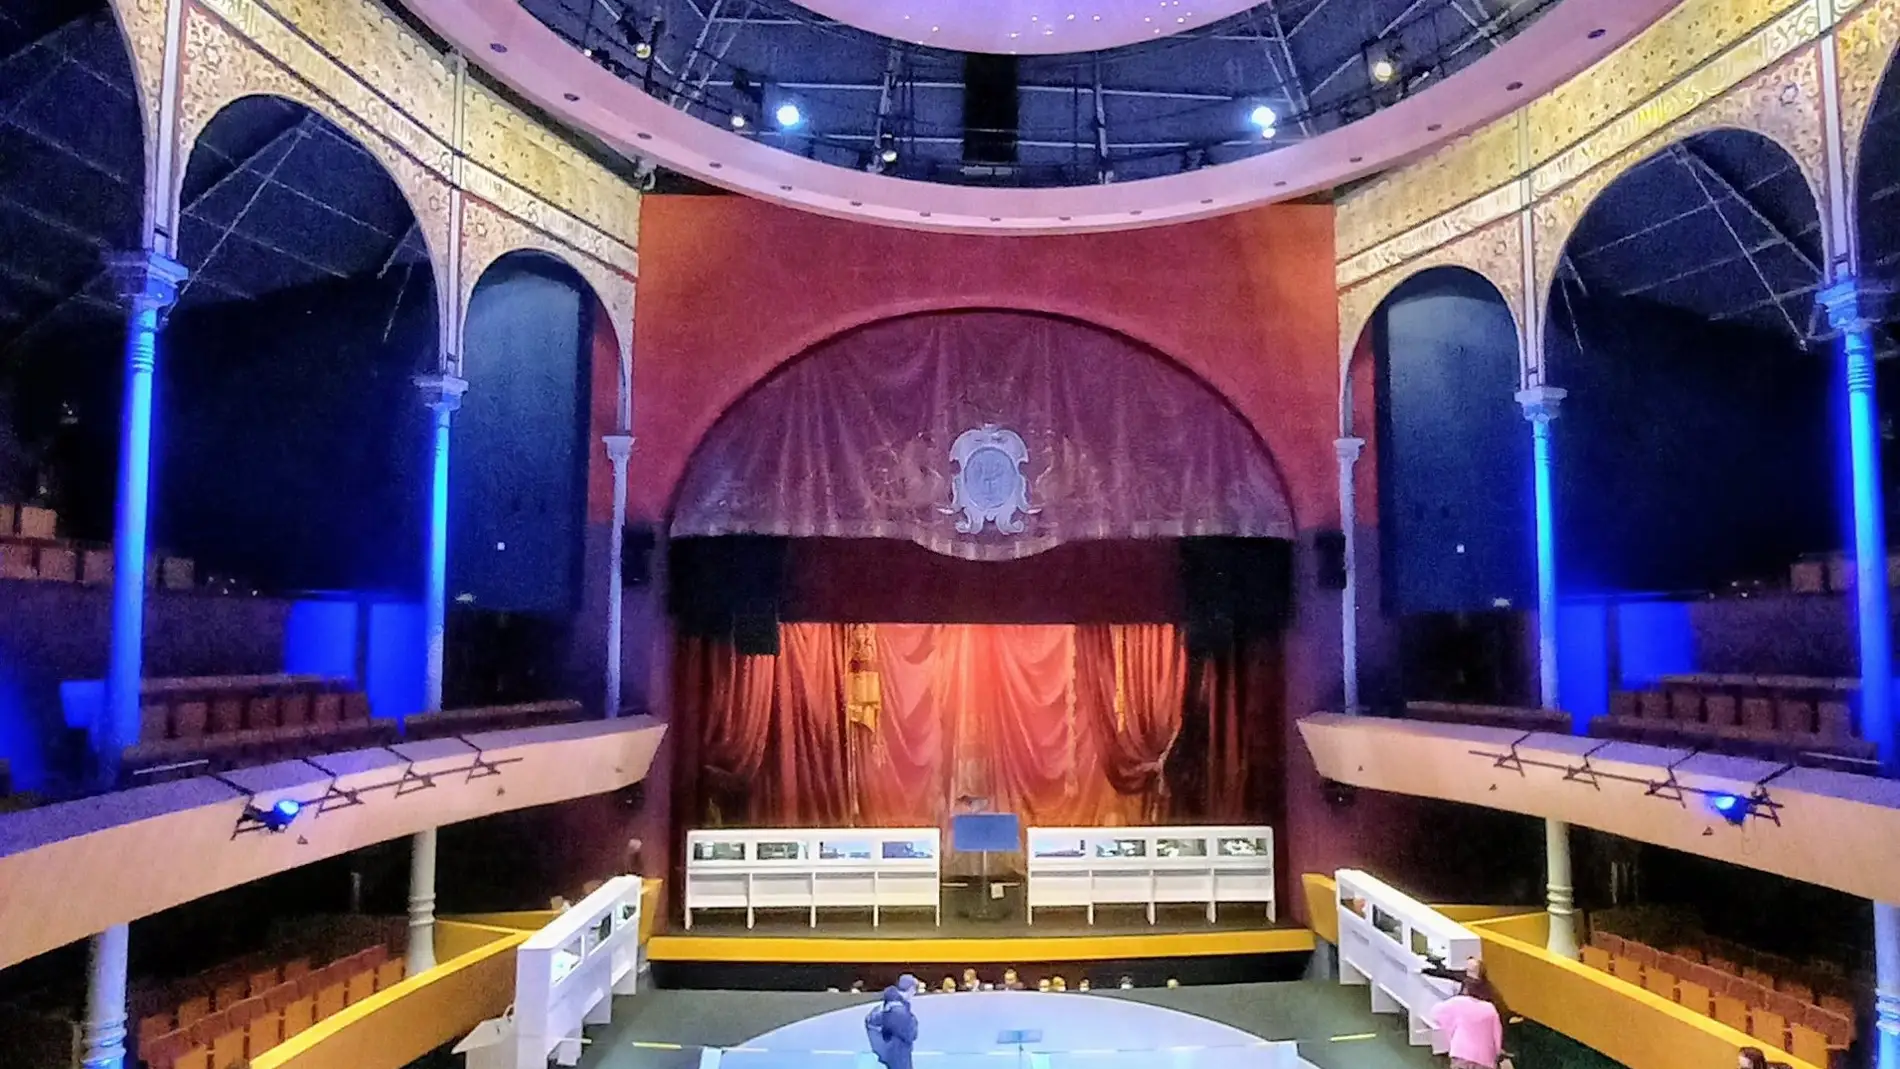 El Teatro Circo abre sus puertas al público tras más de un año con el telón bajado